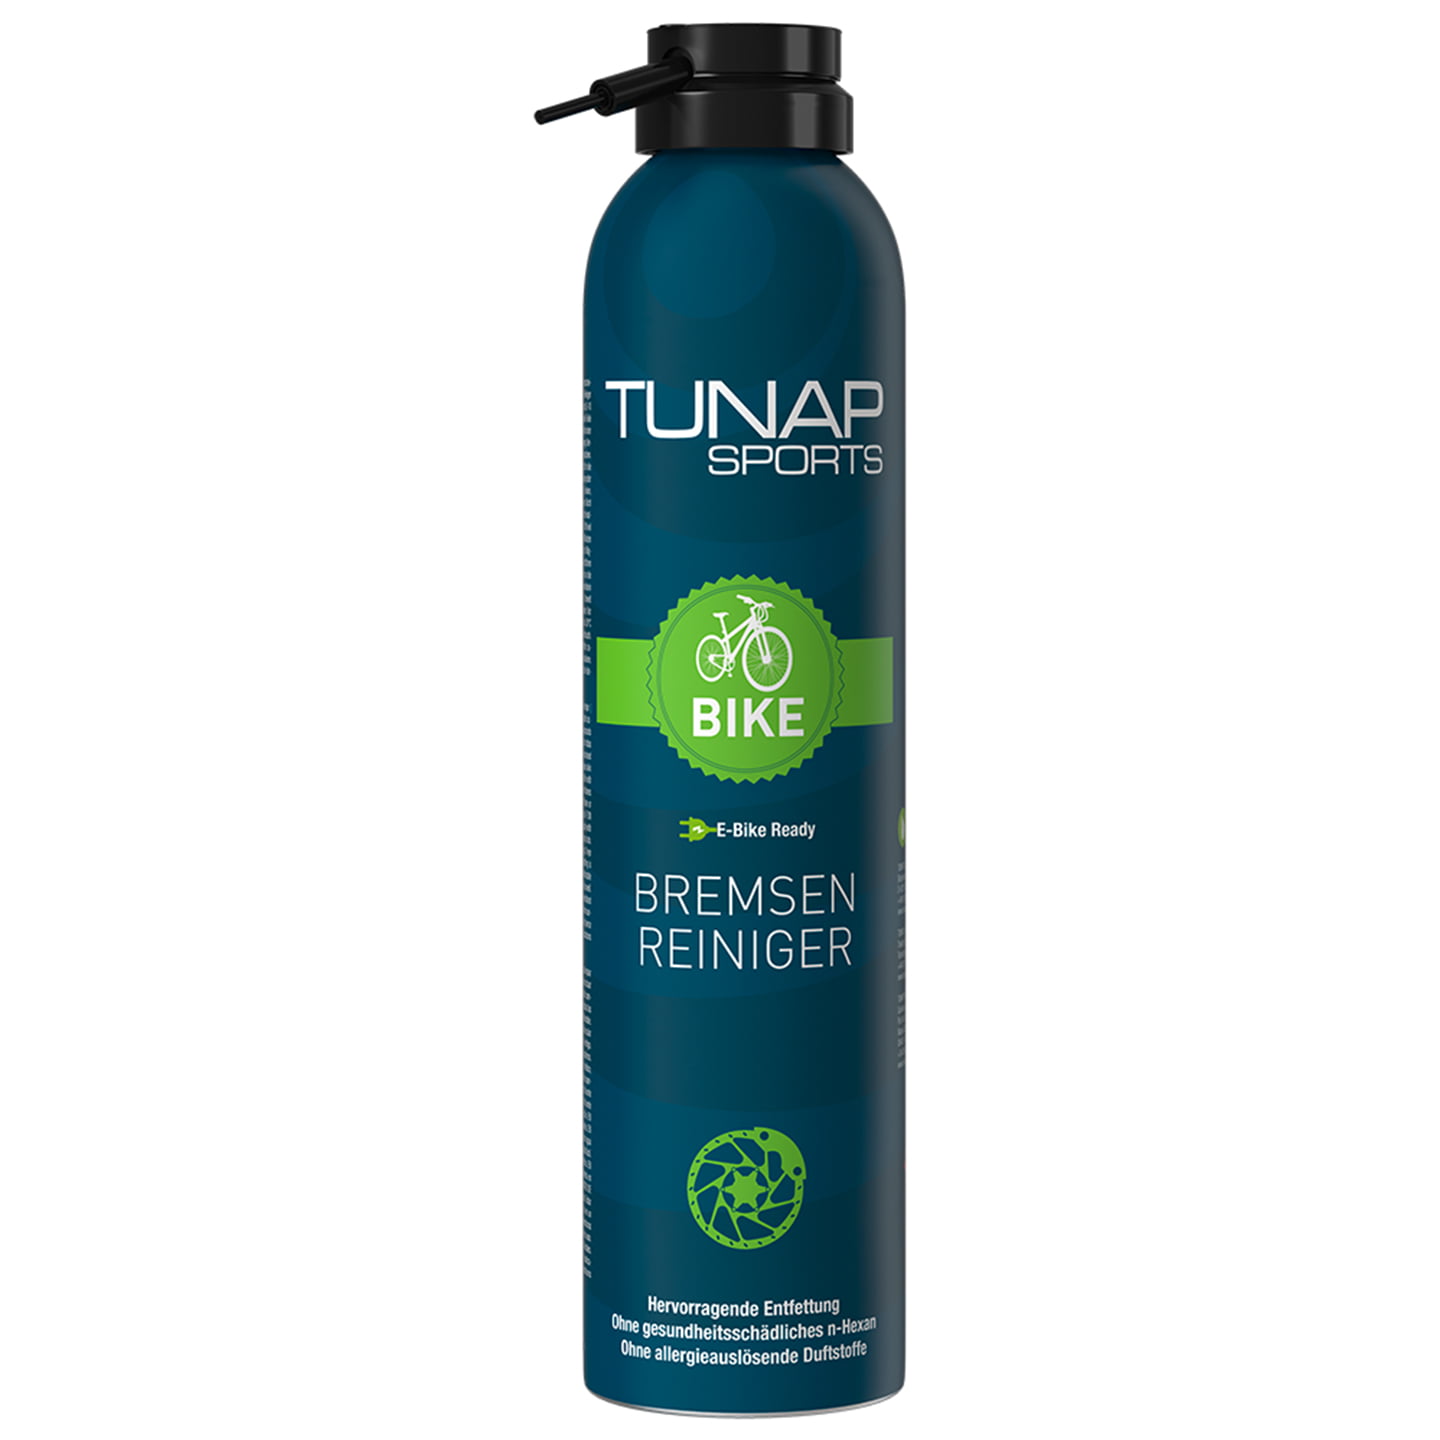 TUNAP SPORTS 300ml Brake Cleaner, Bike accessories